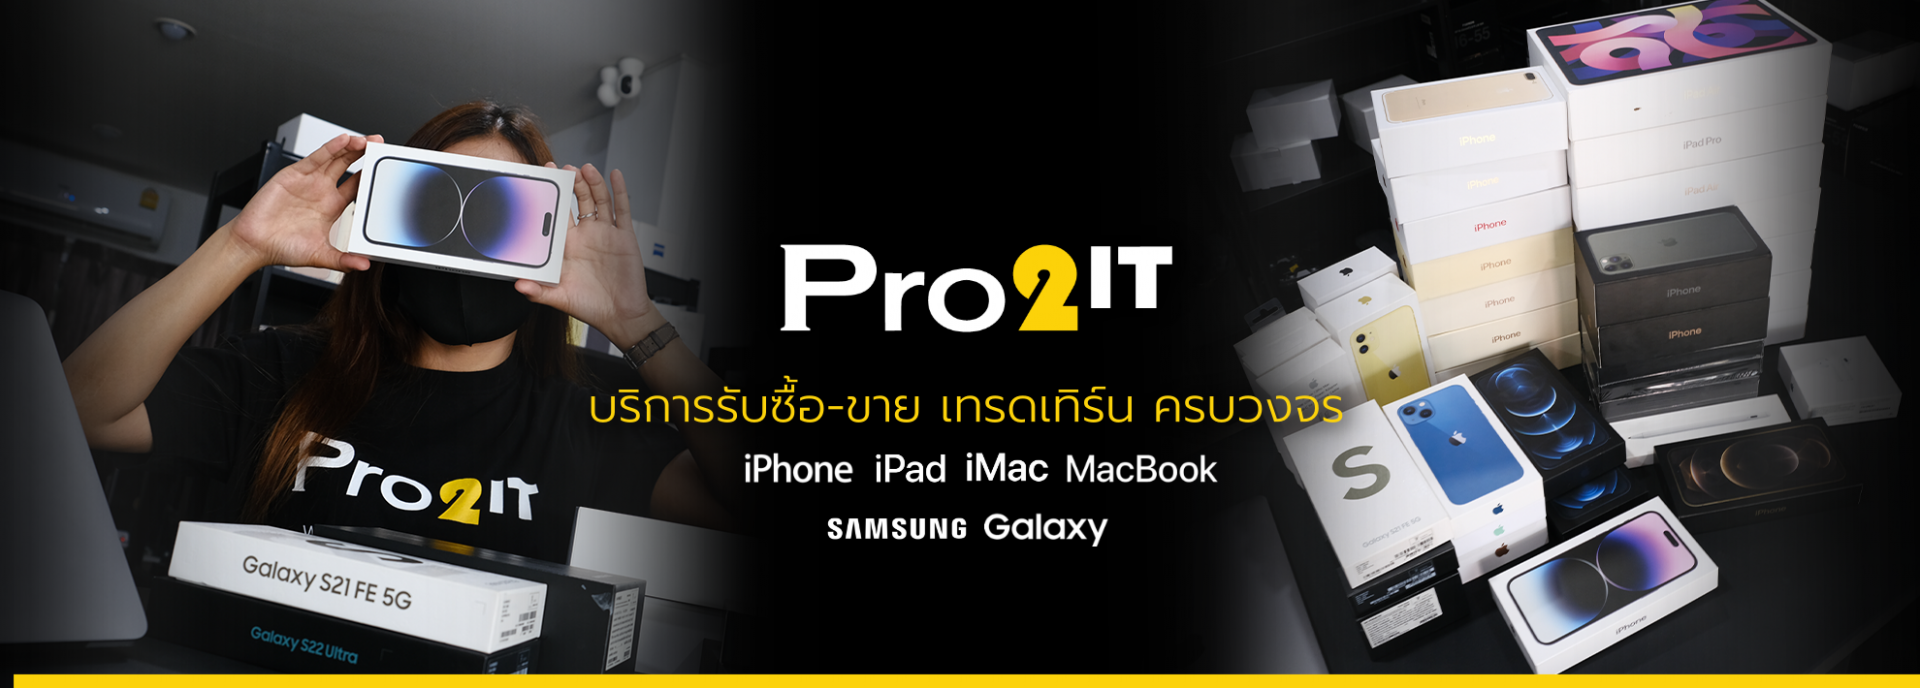 Pro2it รับซื้อไอโฟน ไอแพด Macbook iPhone iPad iMac Samsung Galaxy